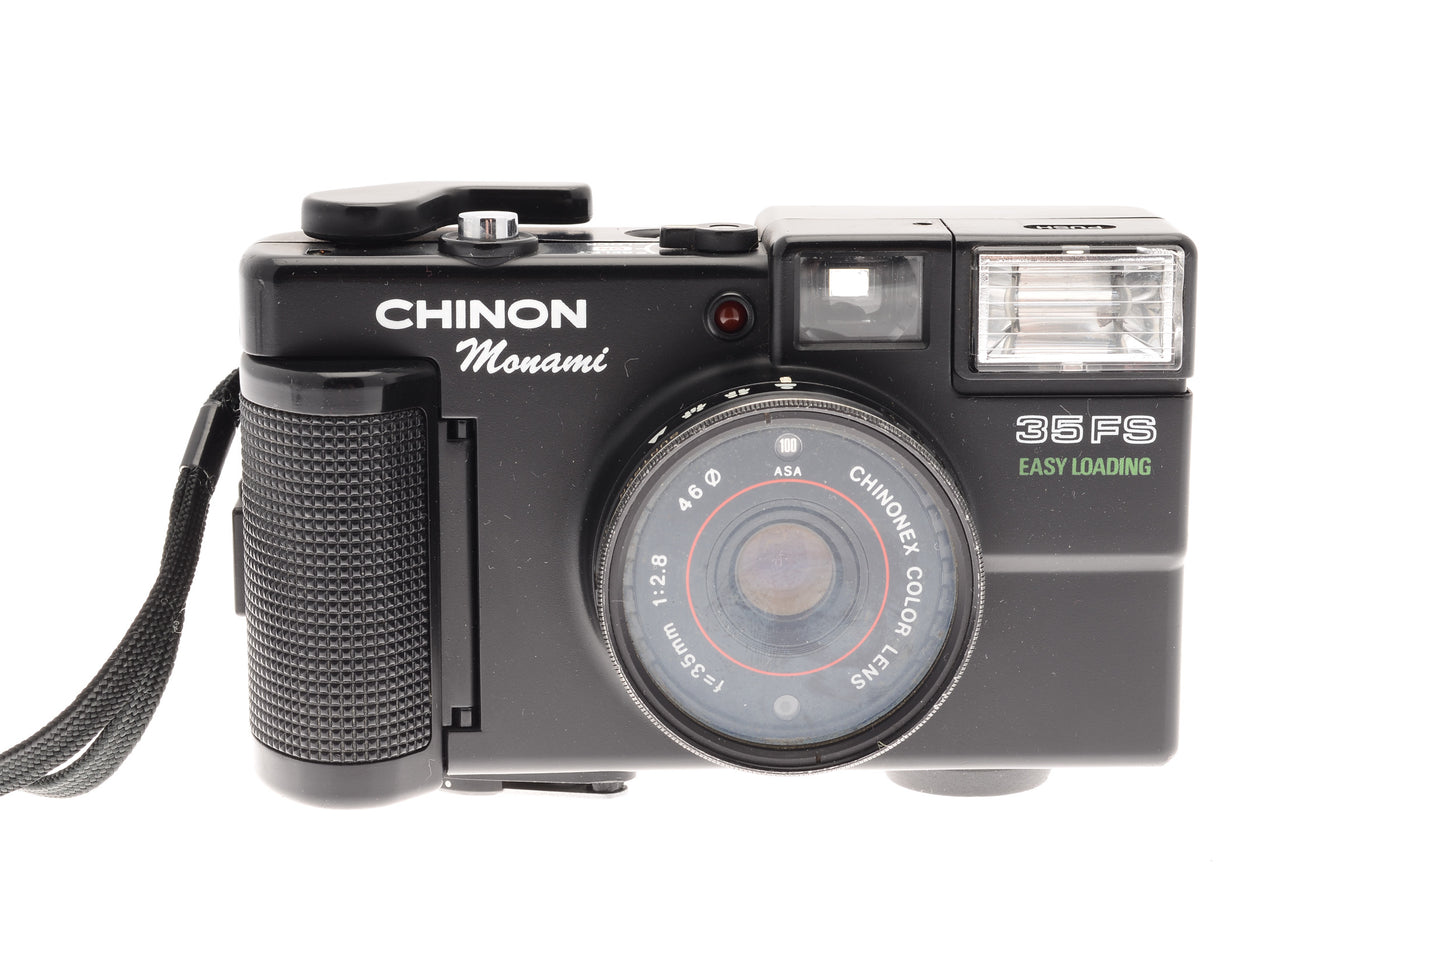 Chinon 35 FS - Camera